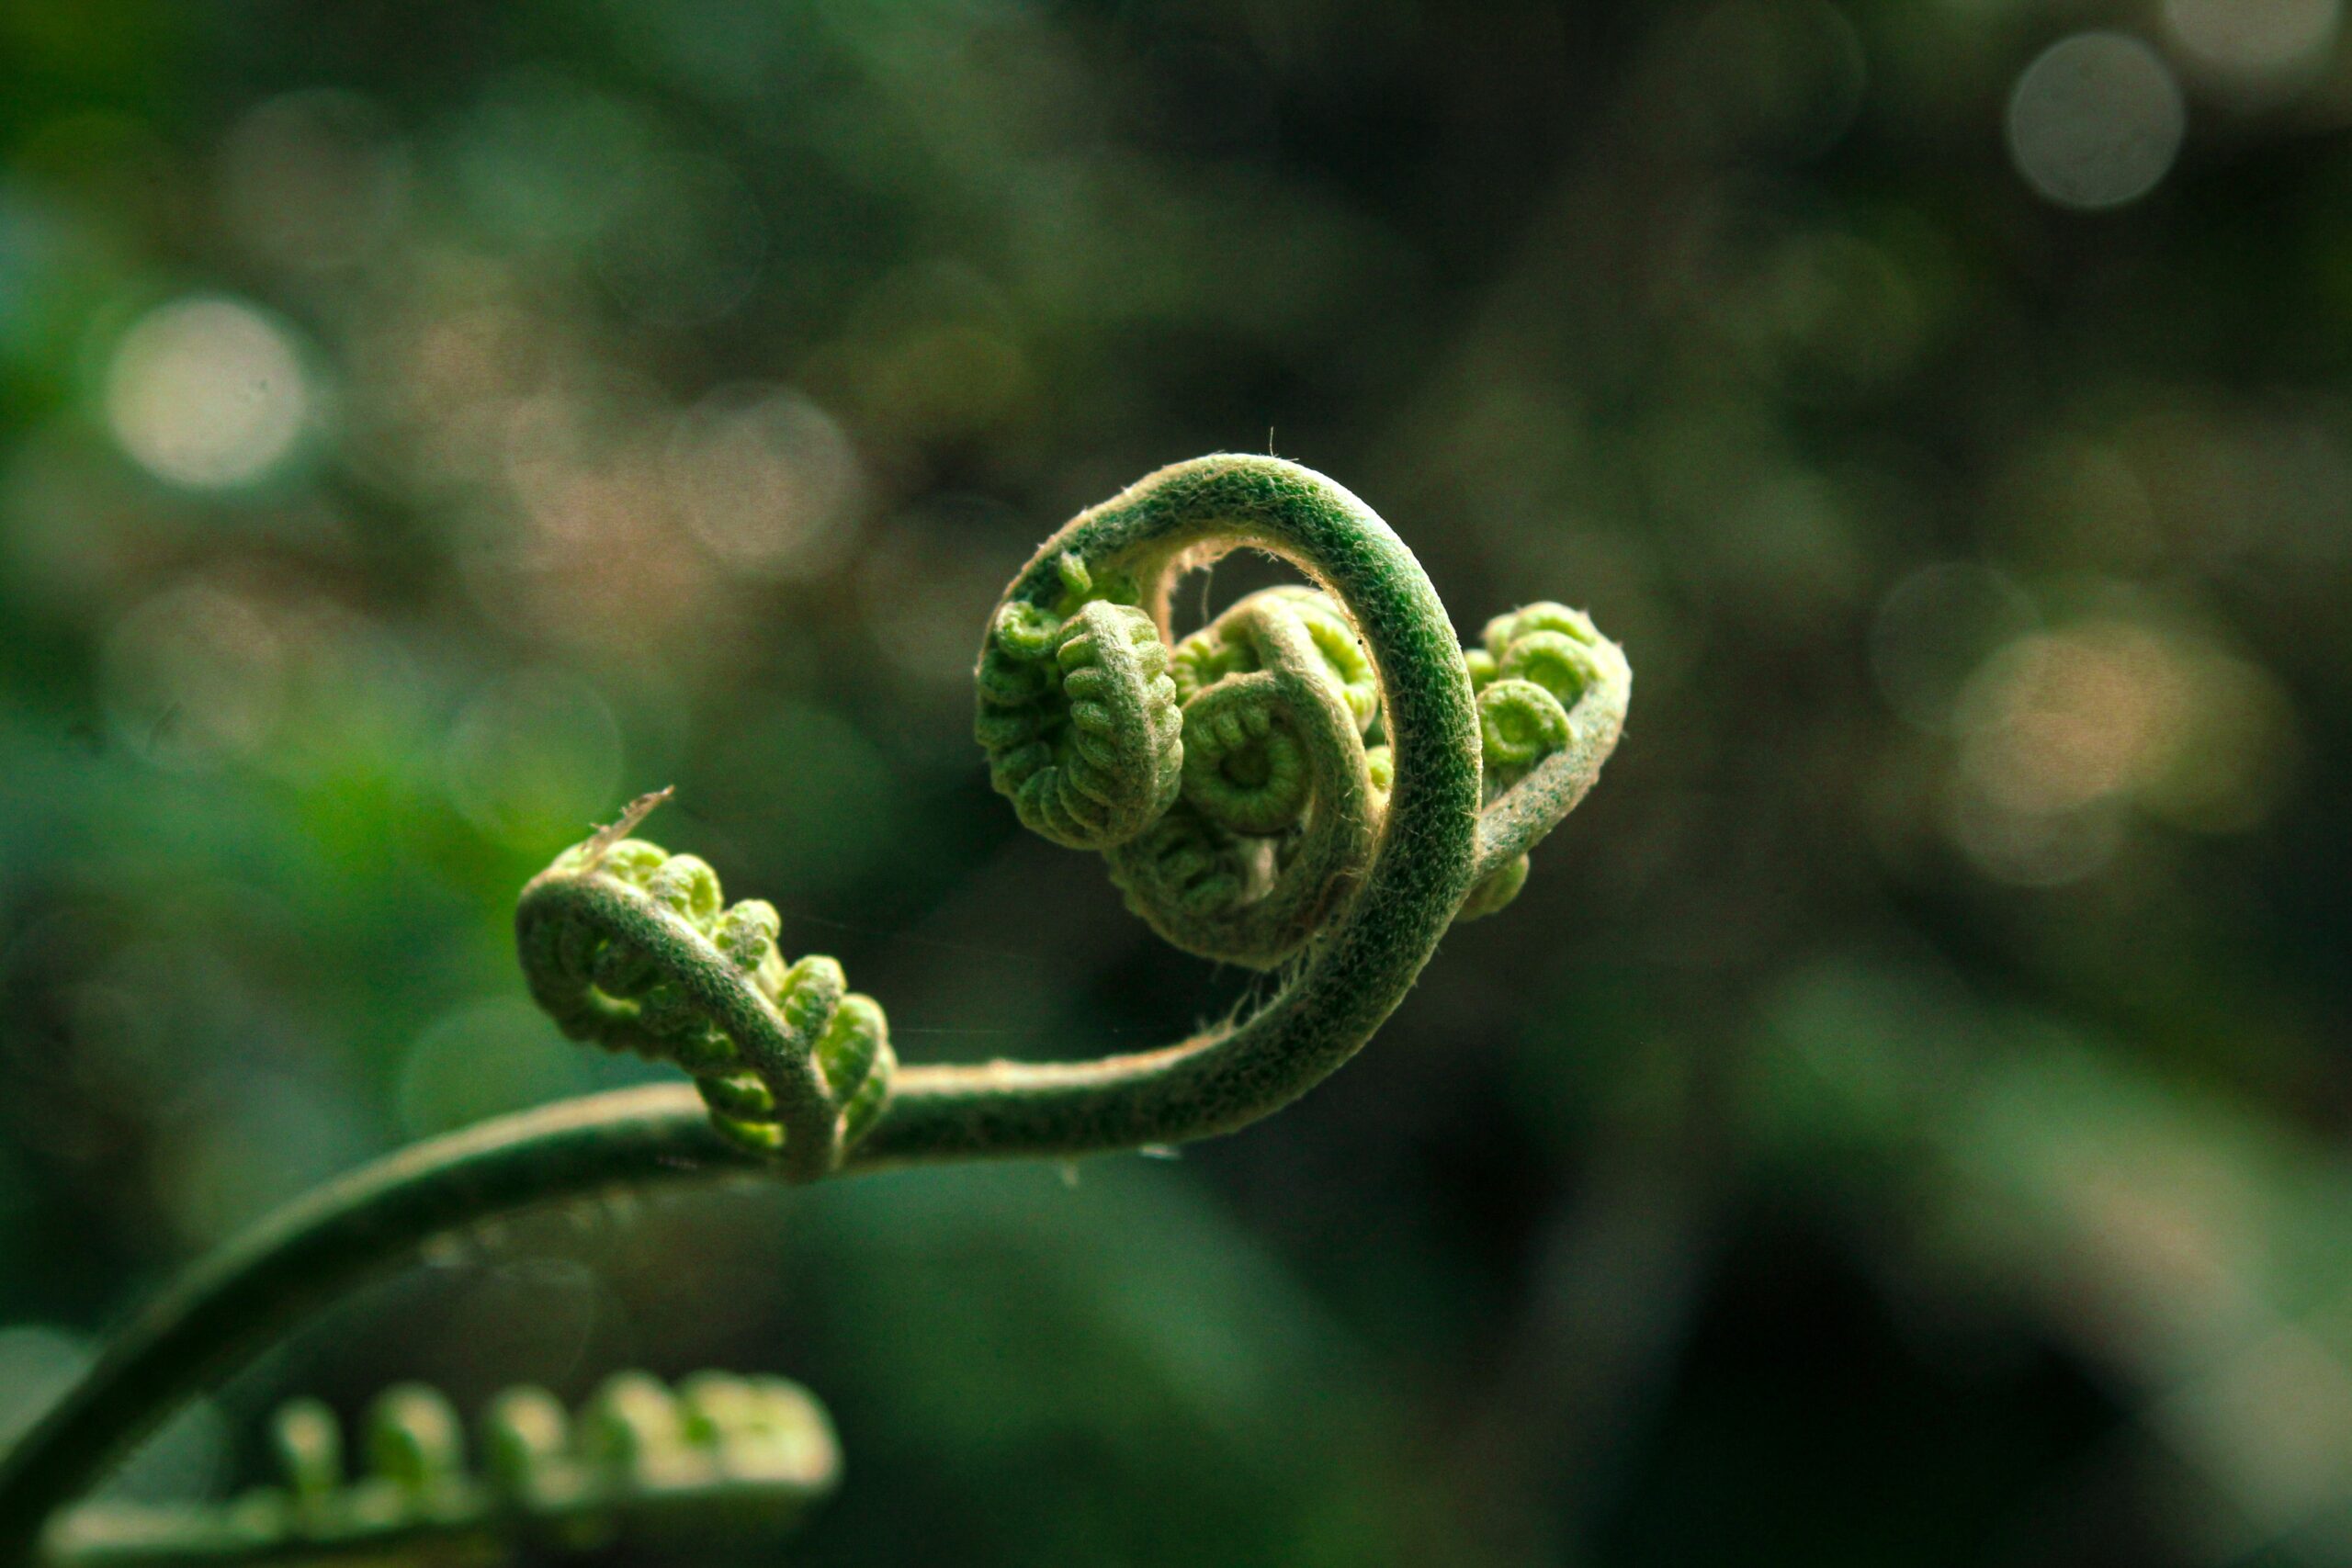 The unfolding fern